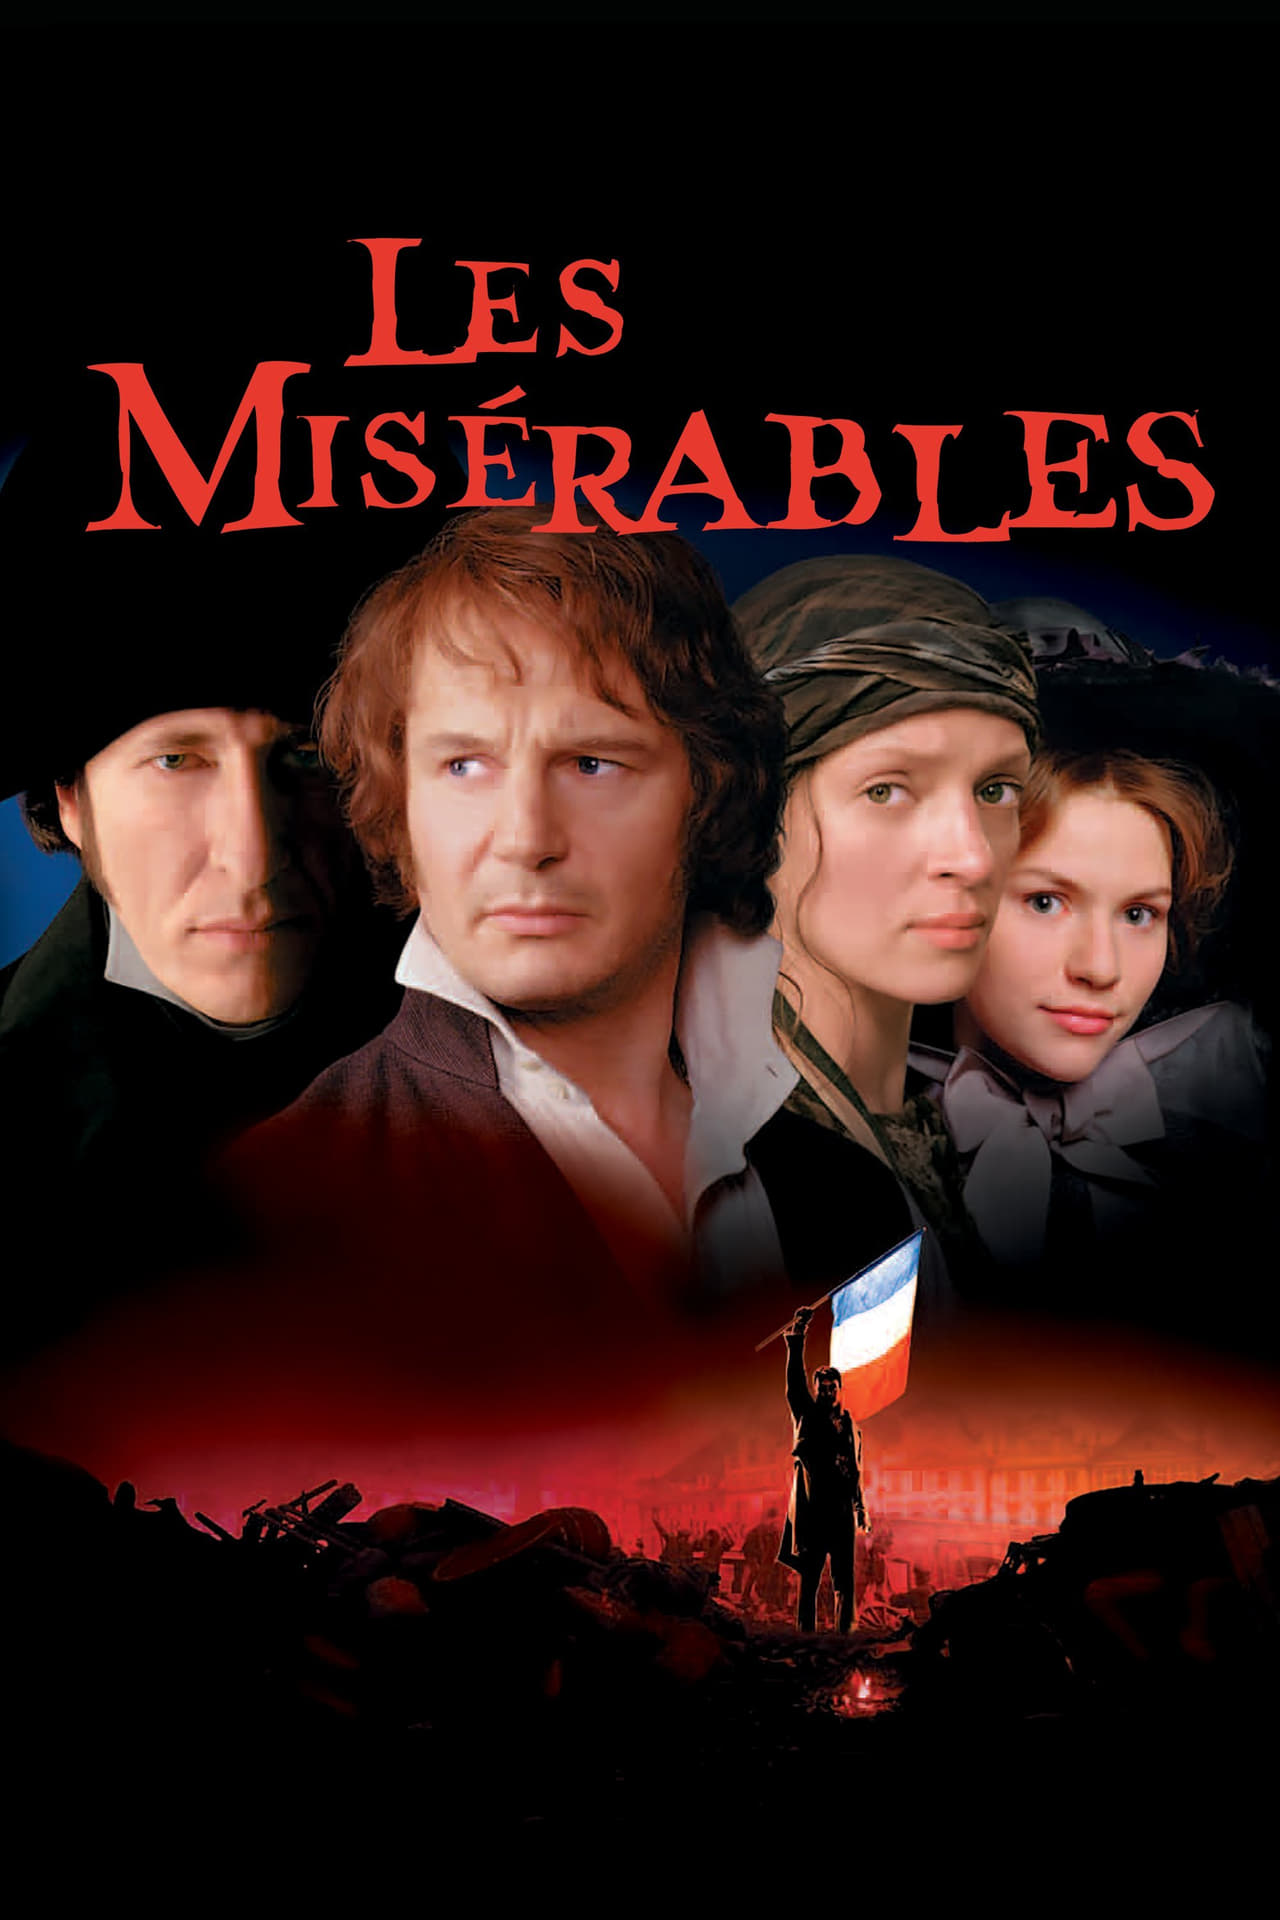 Les Miserables (1998) Theatrical Cut 192Kbps 23.976Fps 48Khz 2.0Ch DVD Turkish Audio TAC